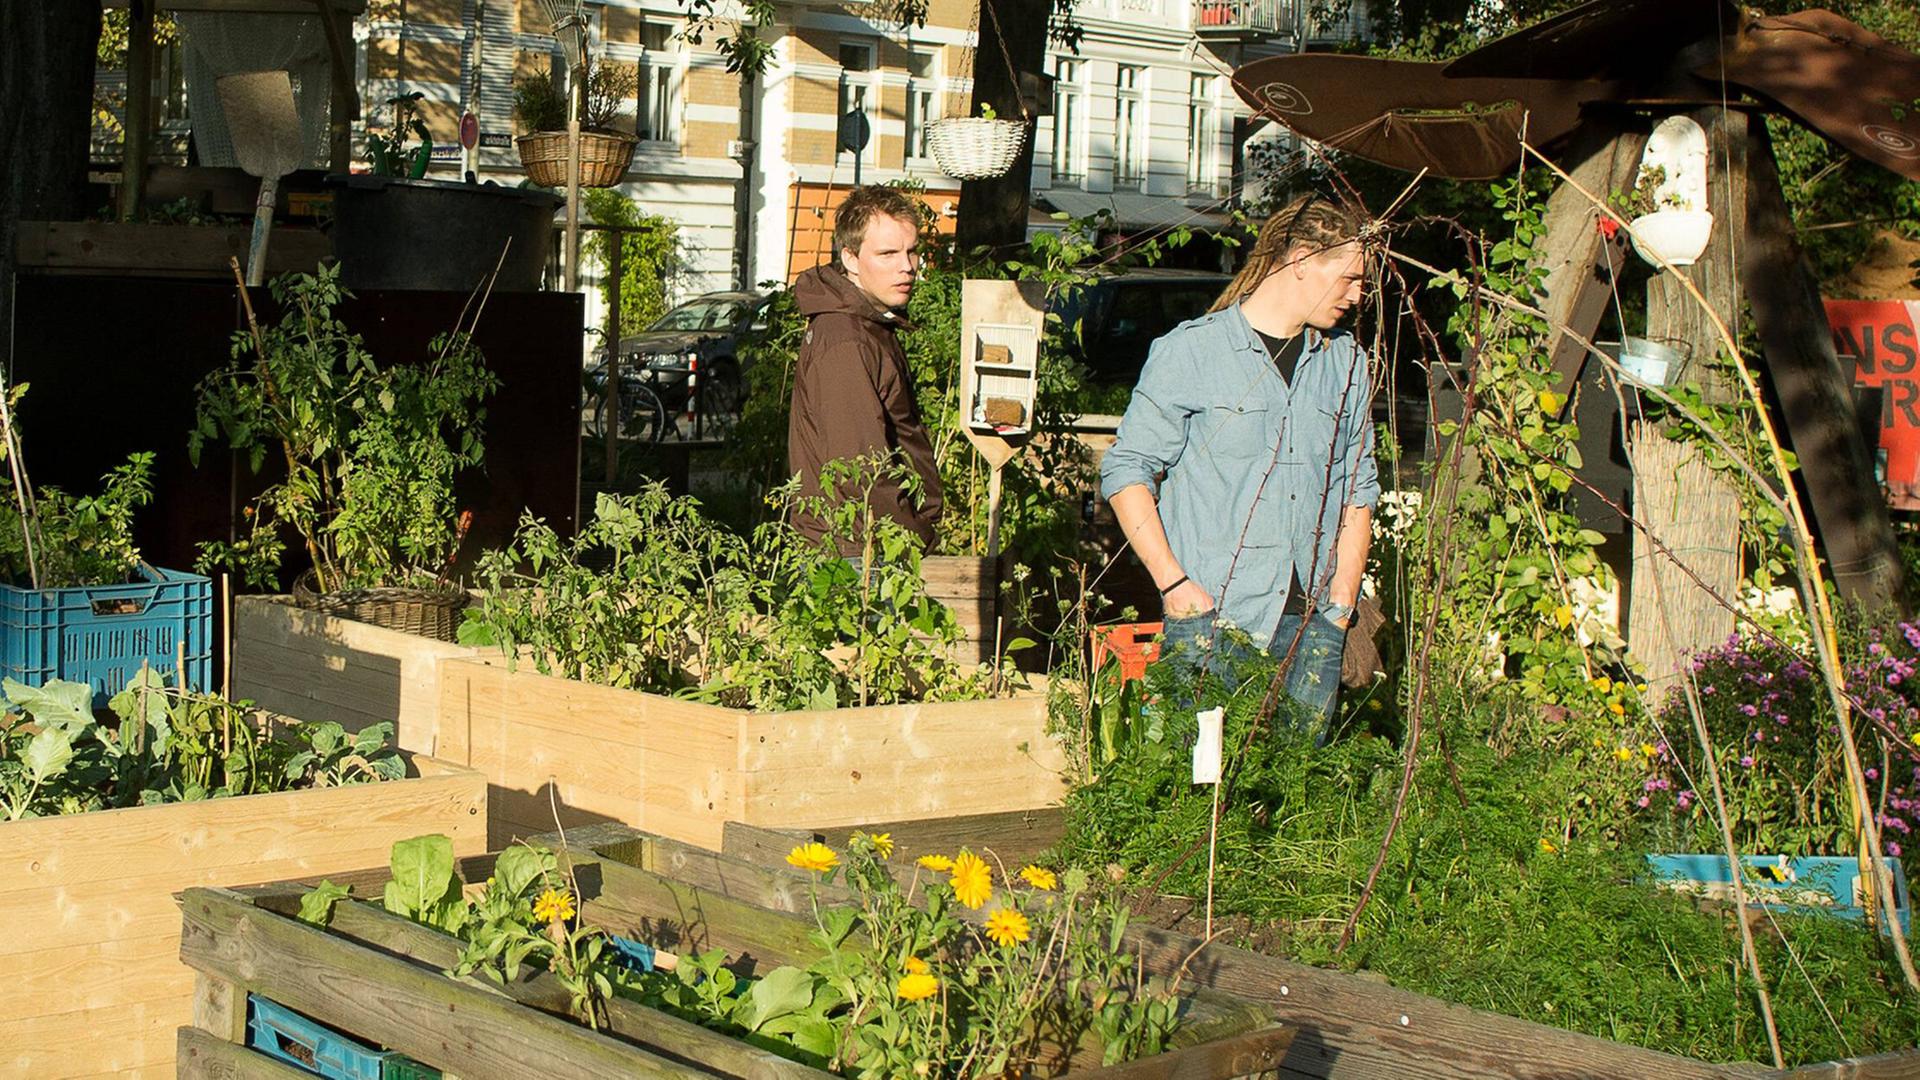 Käufer und Verkäufer zwischen Verkaufsständen mit Blumen, Obst und Gemüse im Hamburger Projekt "Keimzelle - Soziale Gärten für alle"